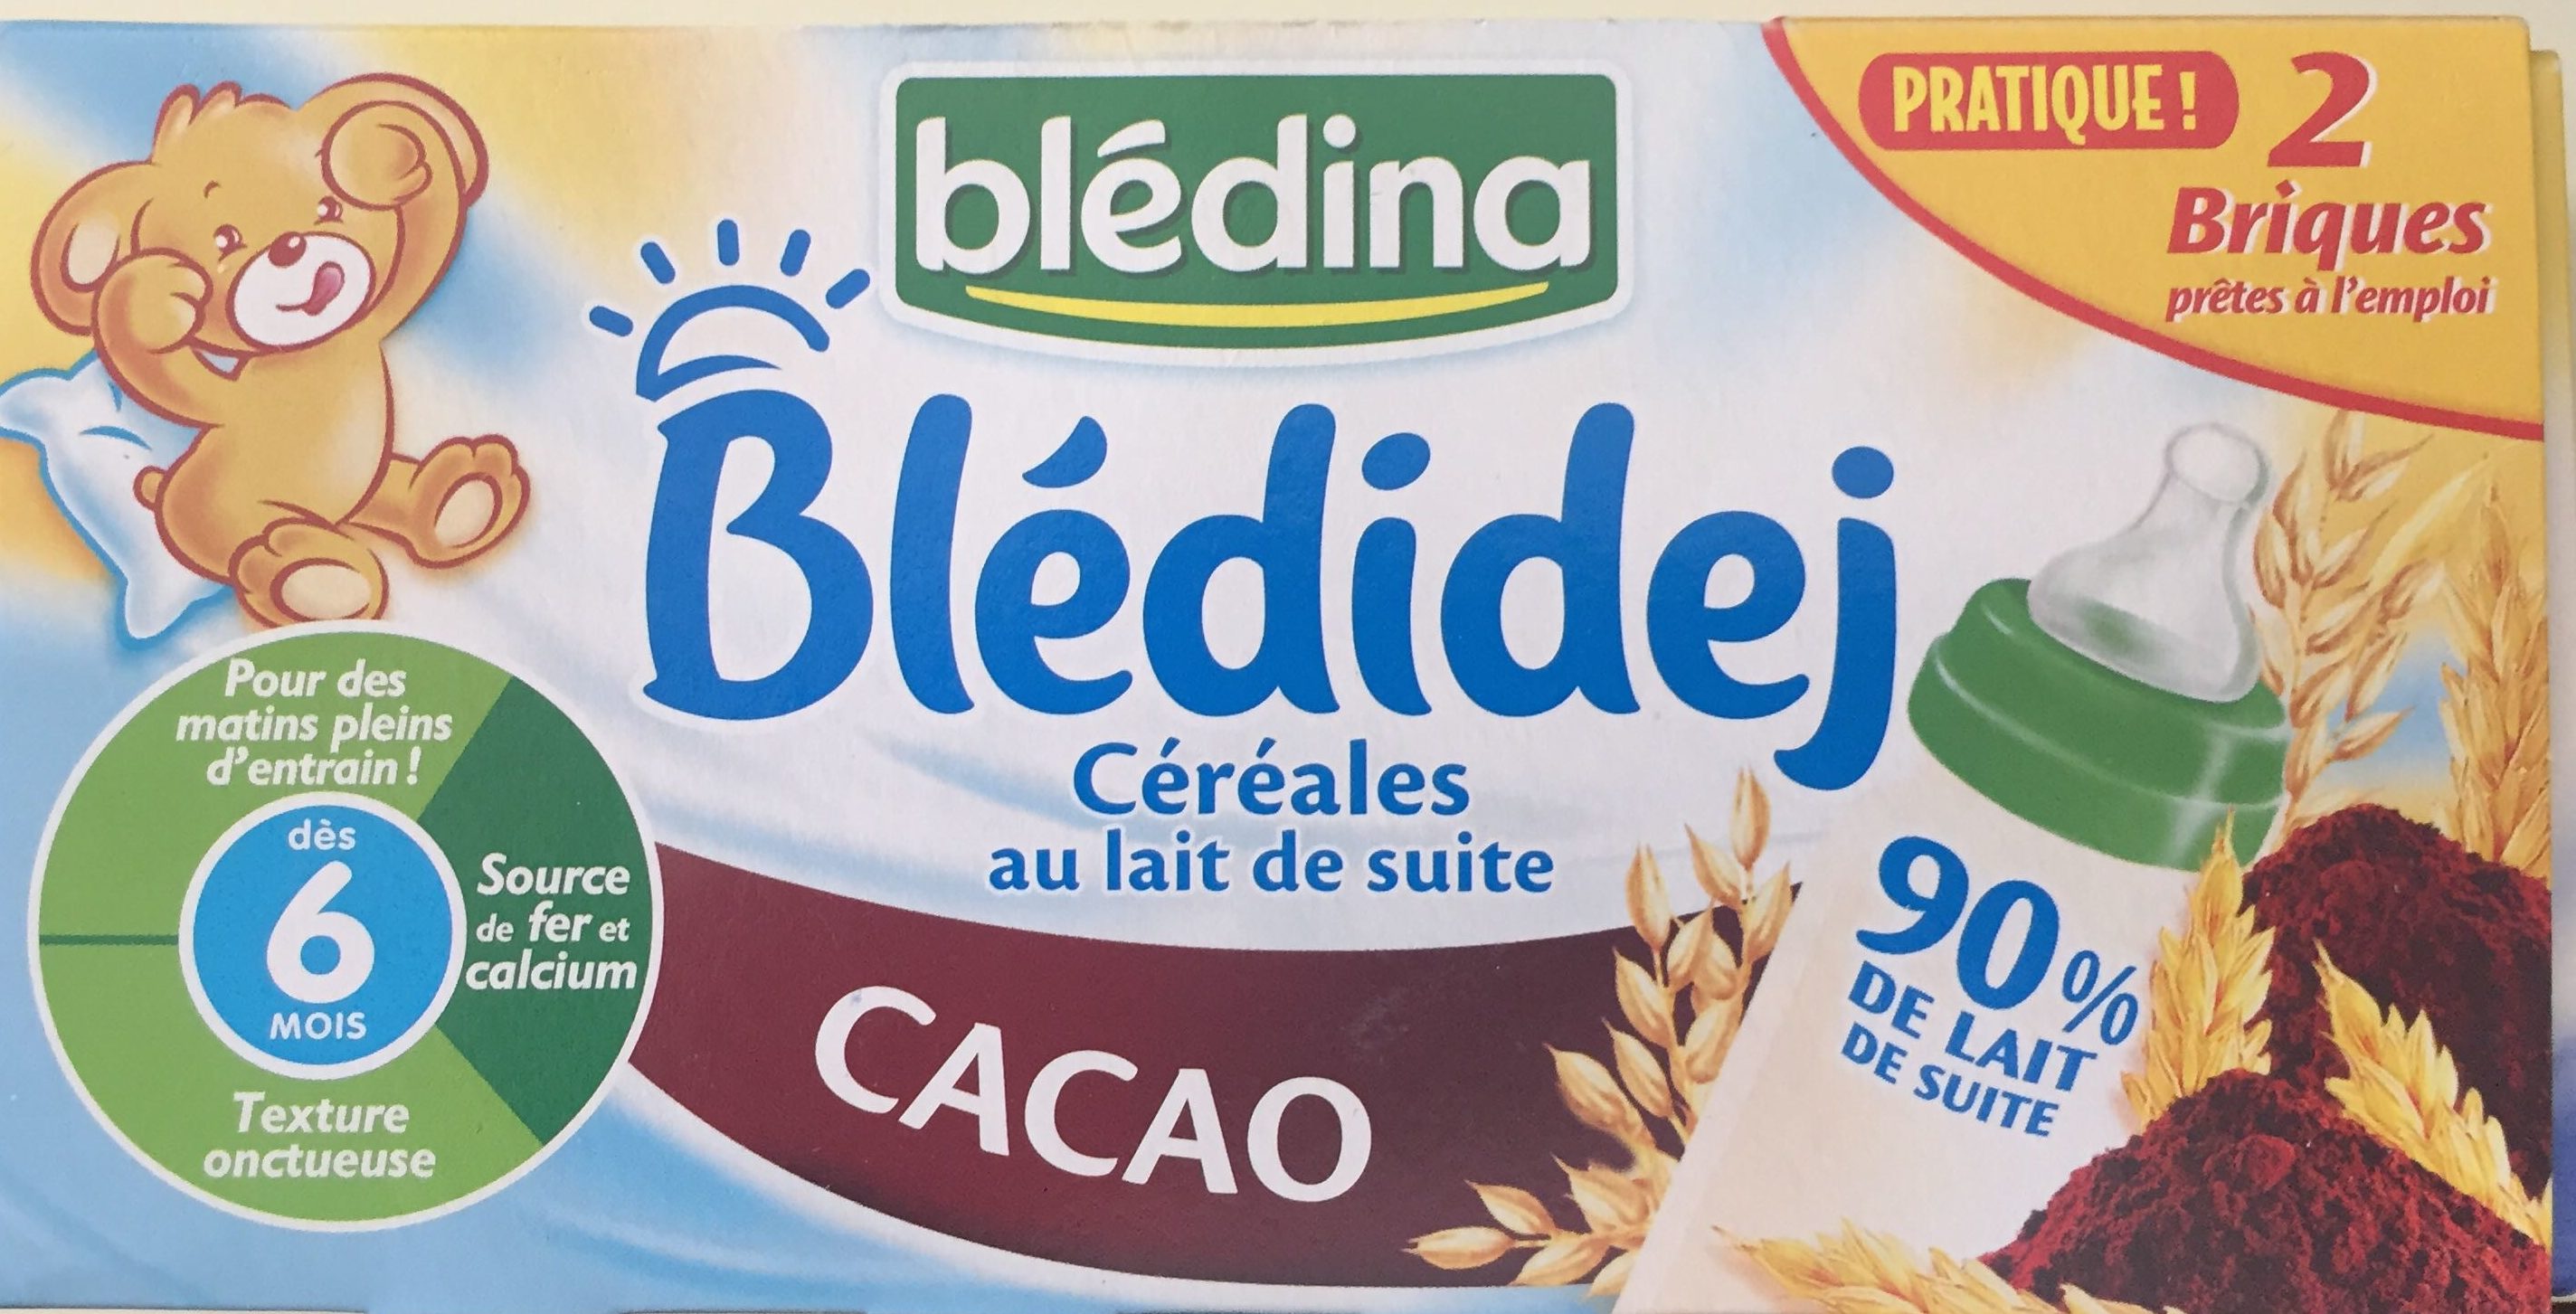 Bledi'dej - Céréales au lait de suite cacao - Product - fr